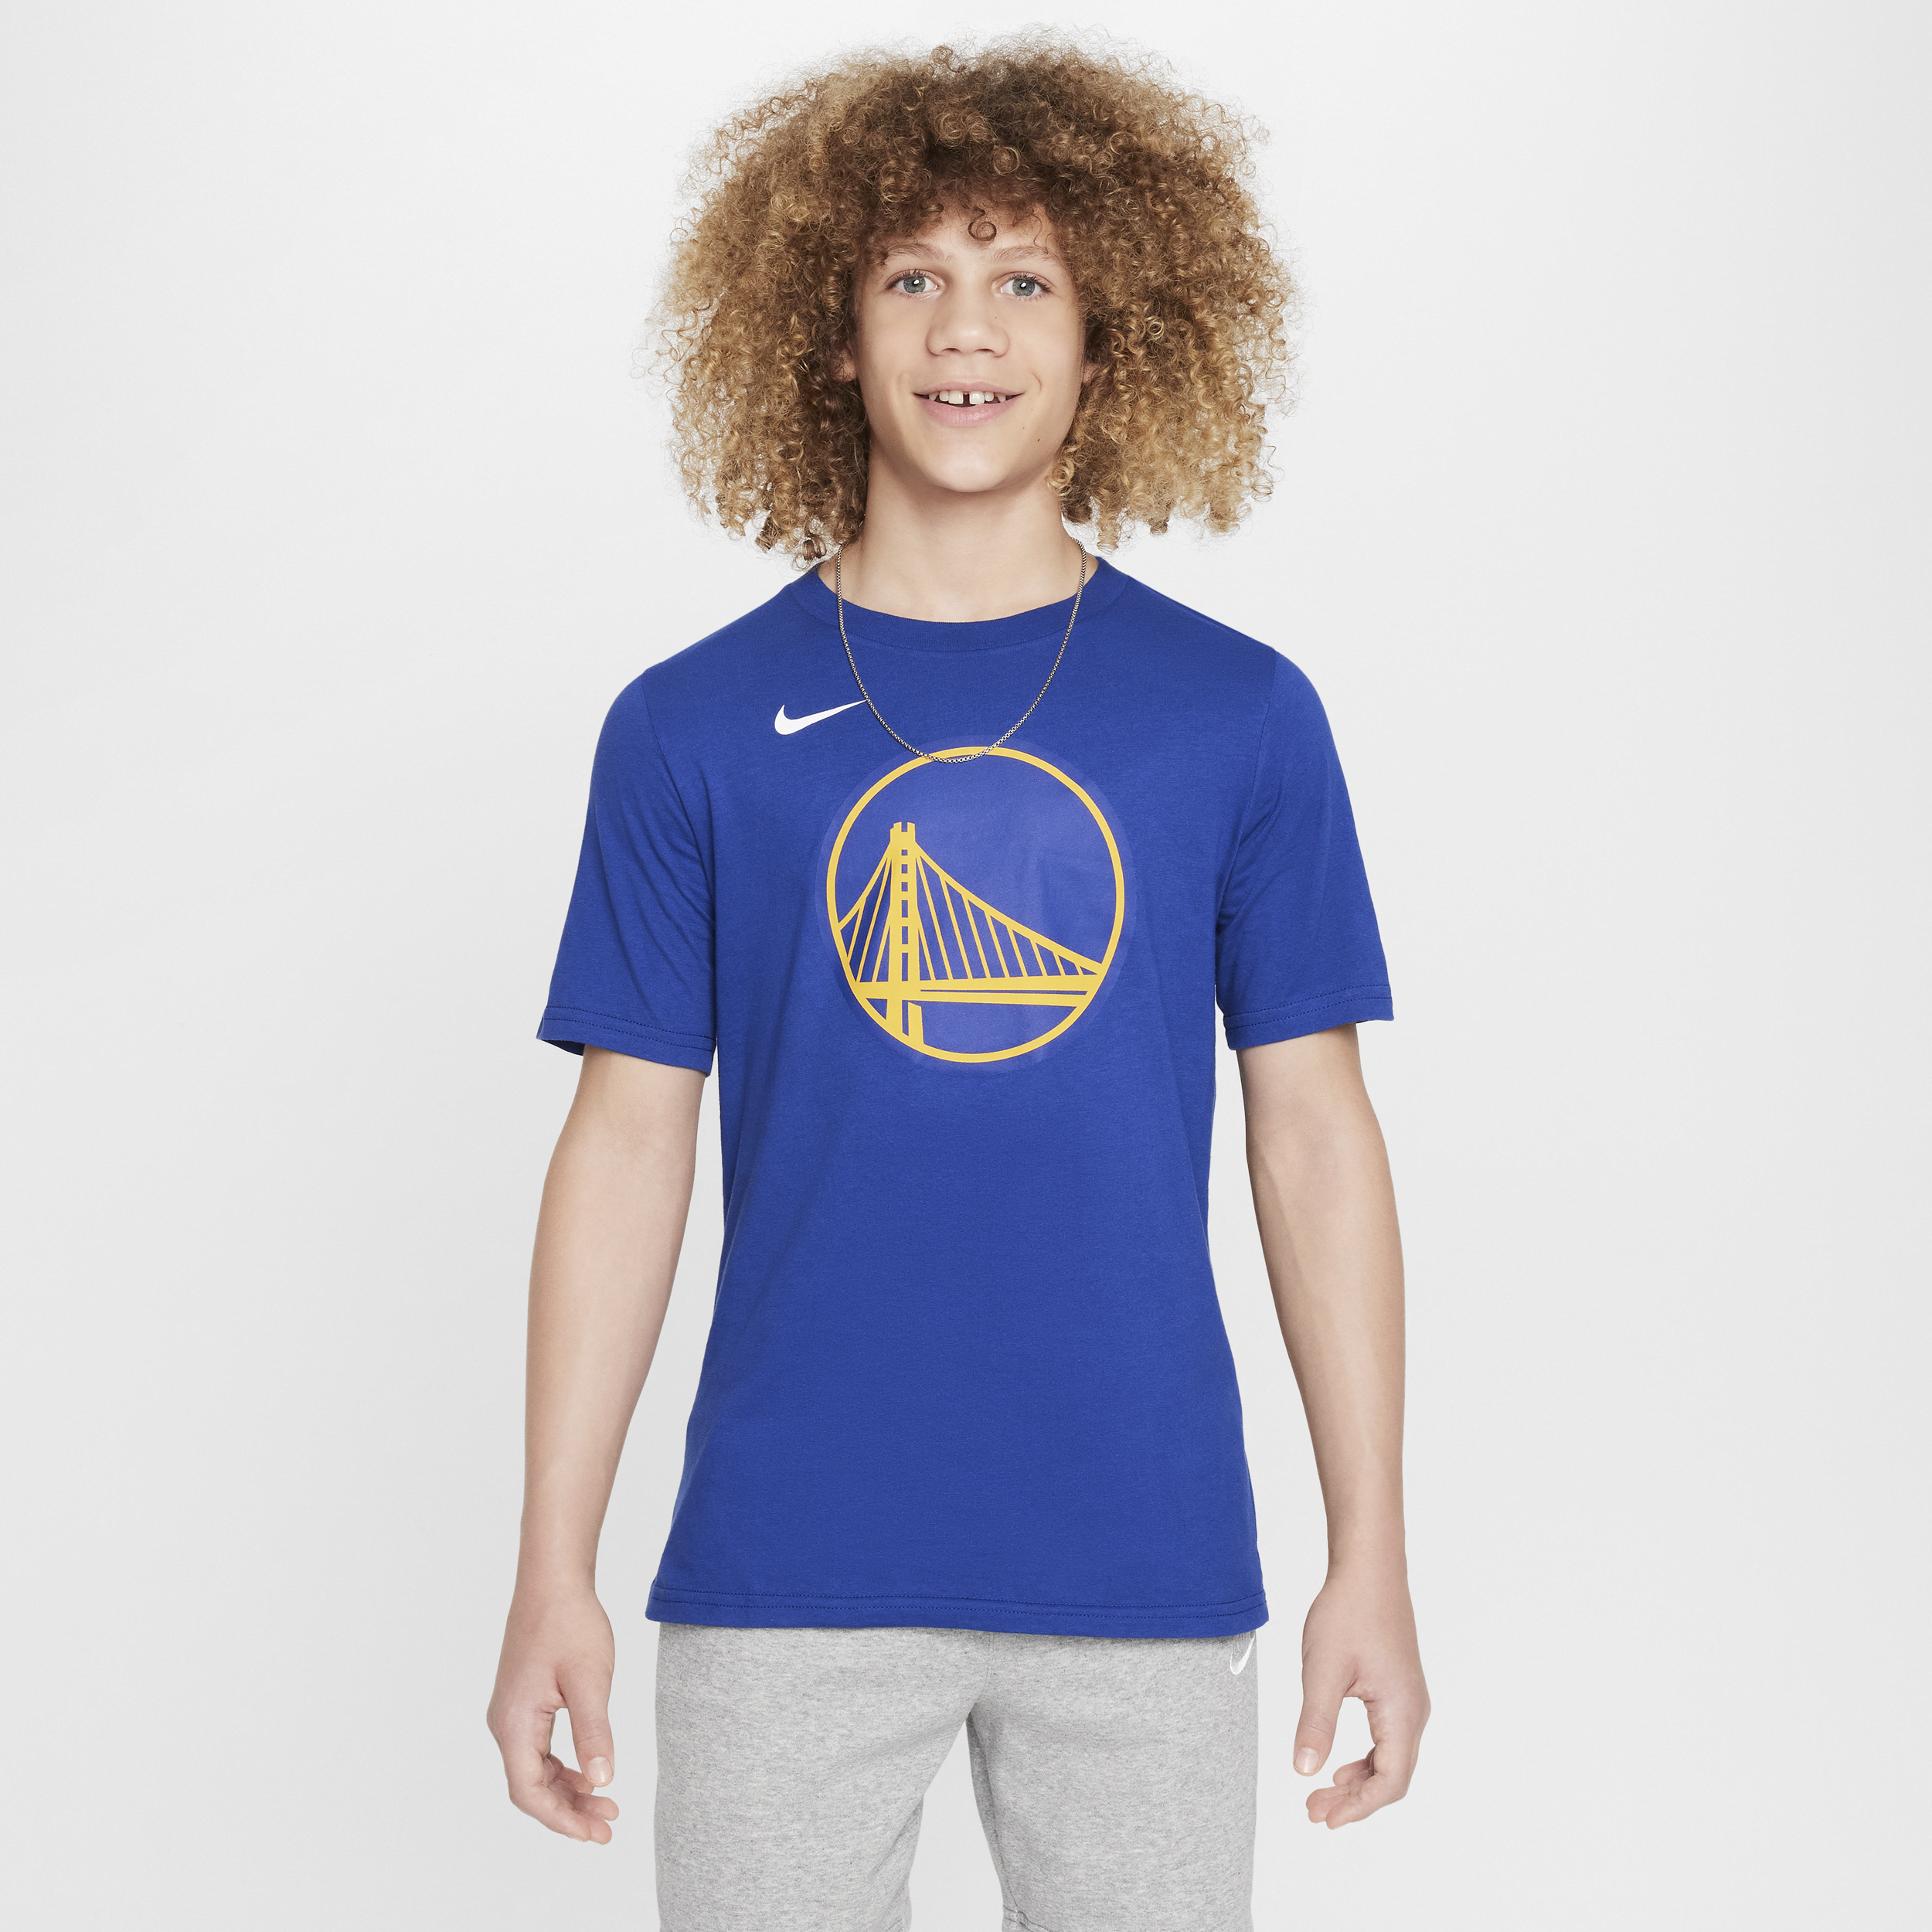 Nike Golden State Warriors Essential NBA-shirt met logo voor jongens Blauw